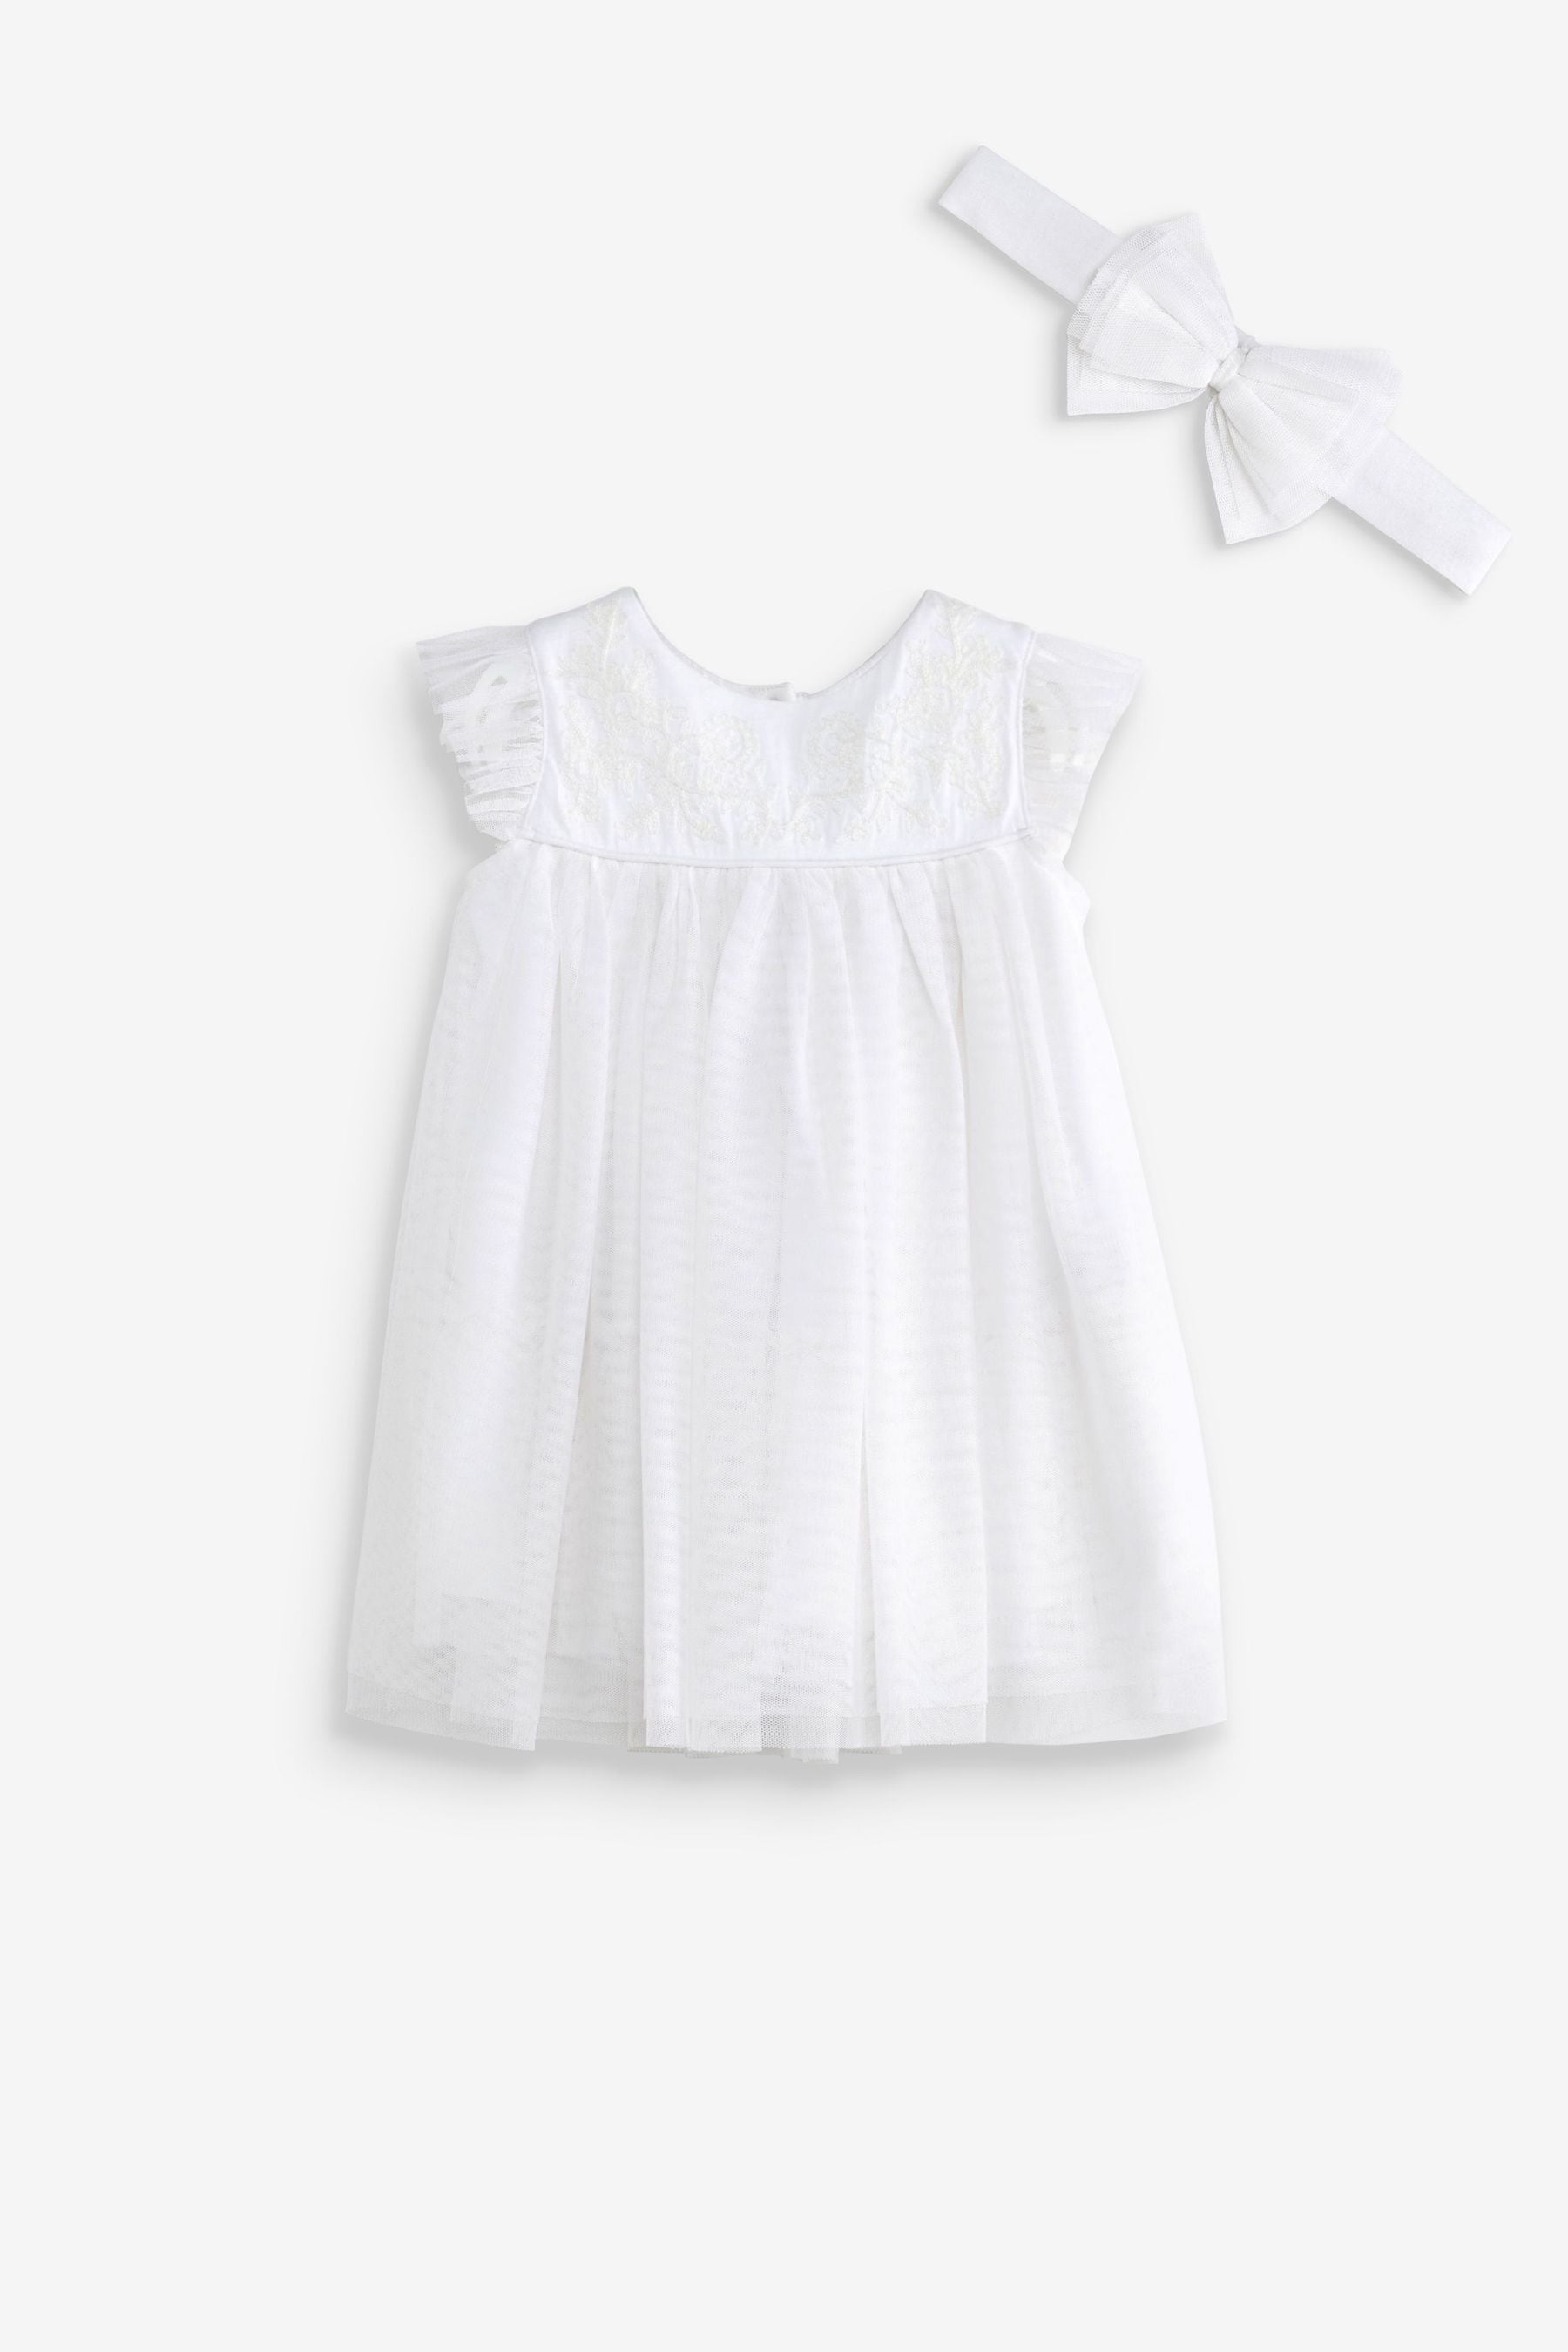 Детское платье для особых случаев Next, белый плаксунова дарья 100% стикеры для особых случаев